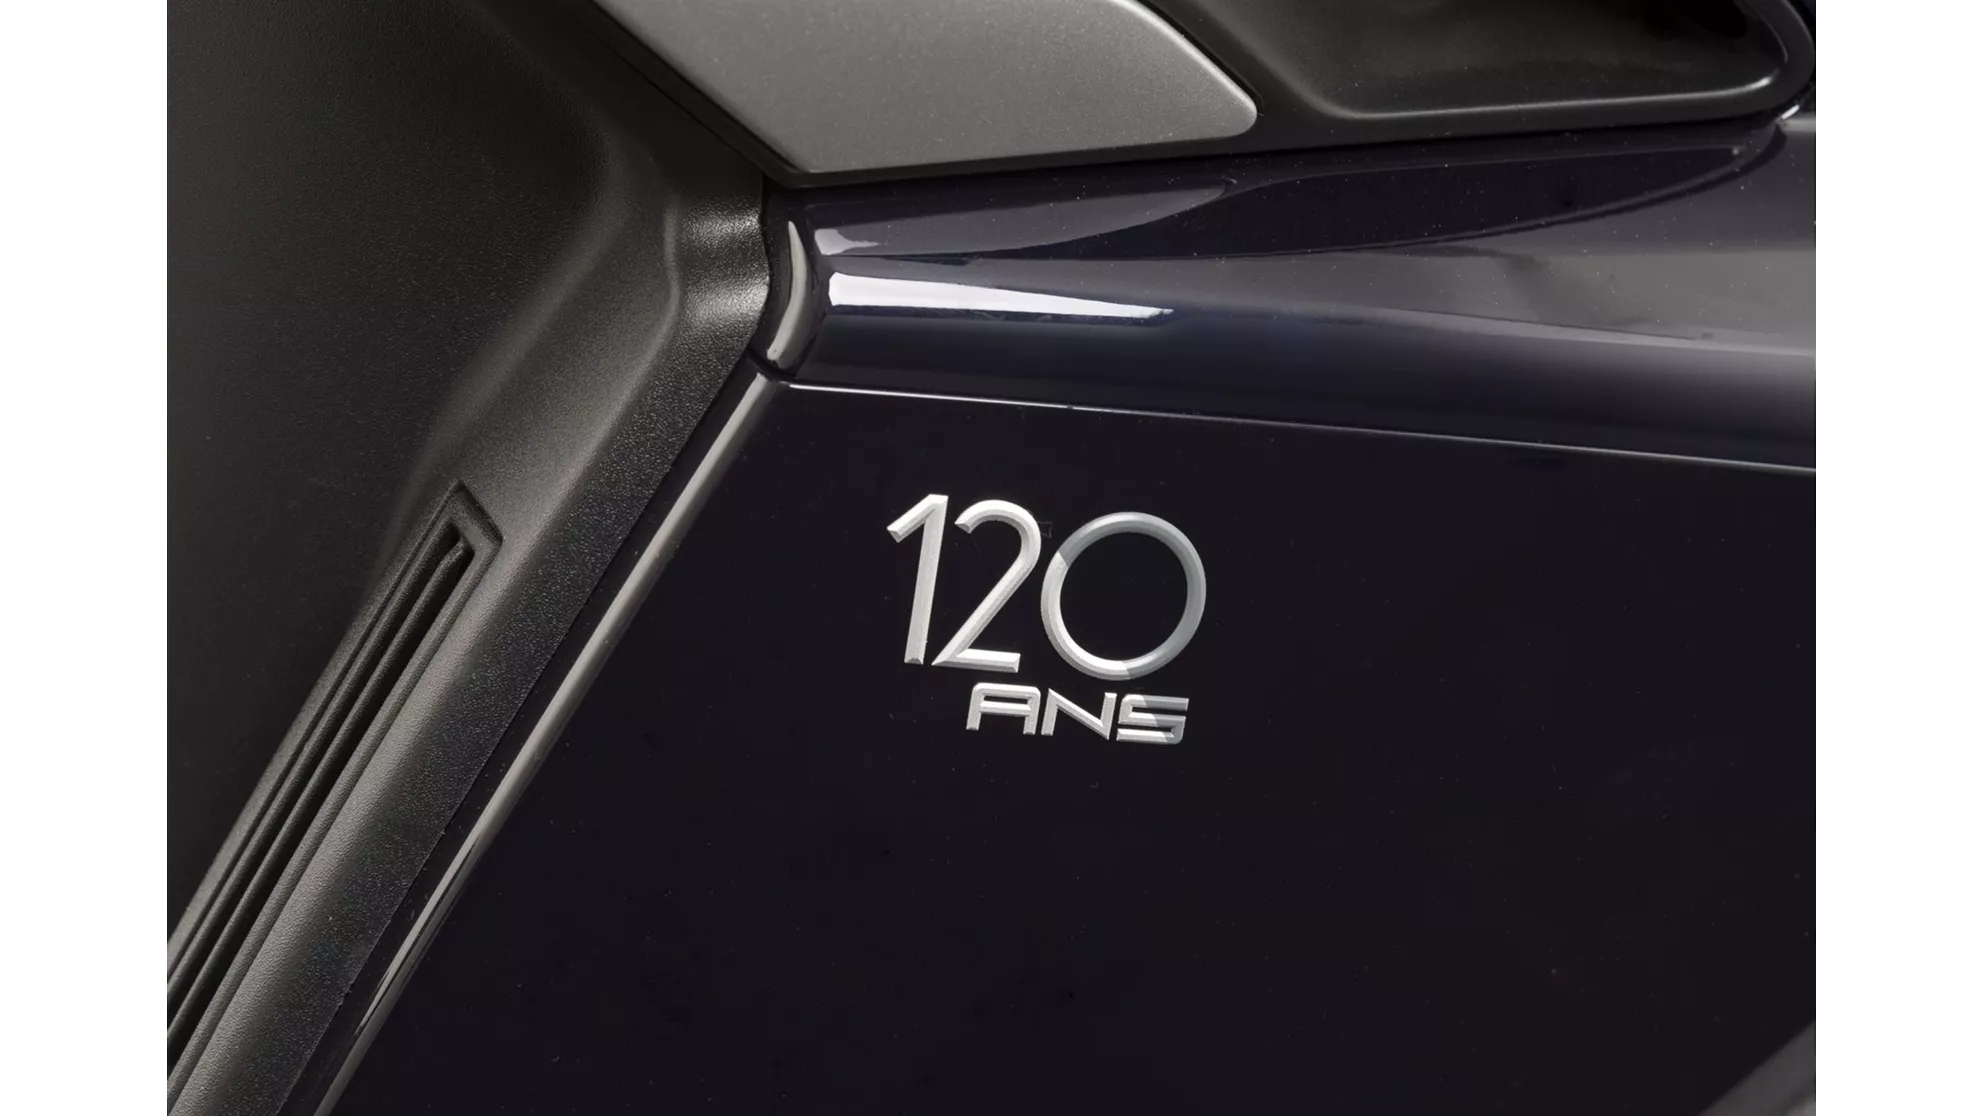 Peugeot Metropolis 120 ans - Obrázek 1